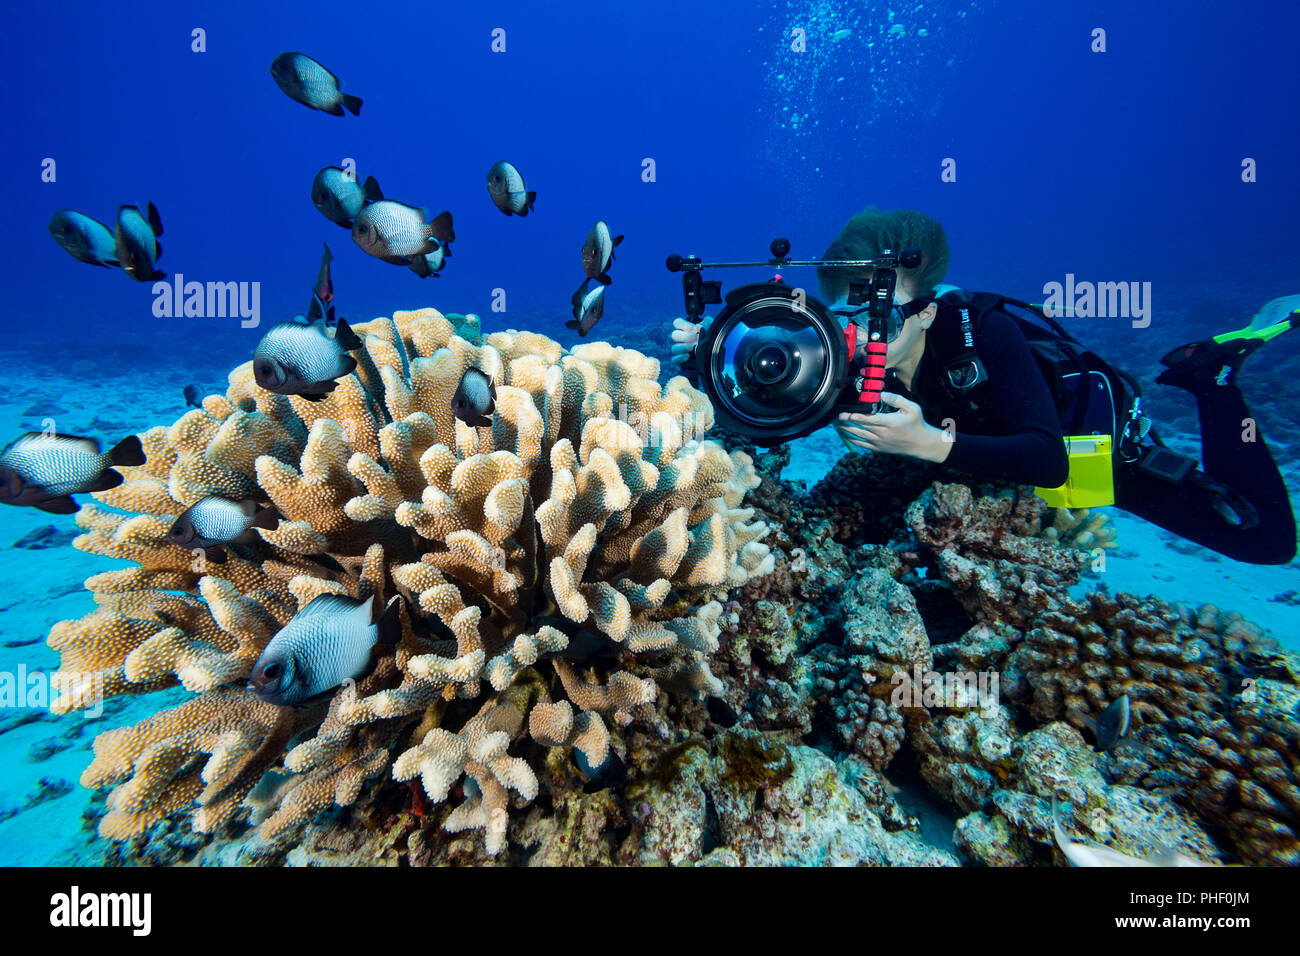 14 Jahre alten Junior Scuba Diver Sean Fleetham (MR) bei Video auf einem Hawaiianischen Riff mit seiner Spiegelreflexkamera in einem ikelite Unterwassergehäuse, Hawaii. Stockfoto